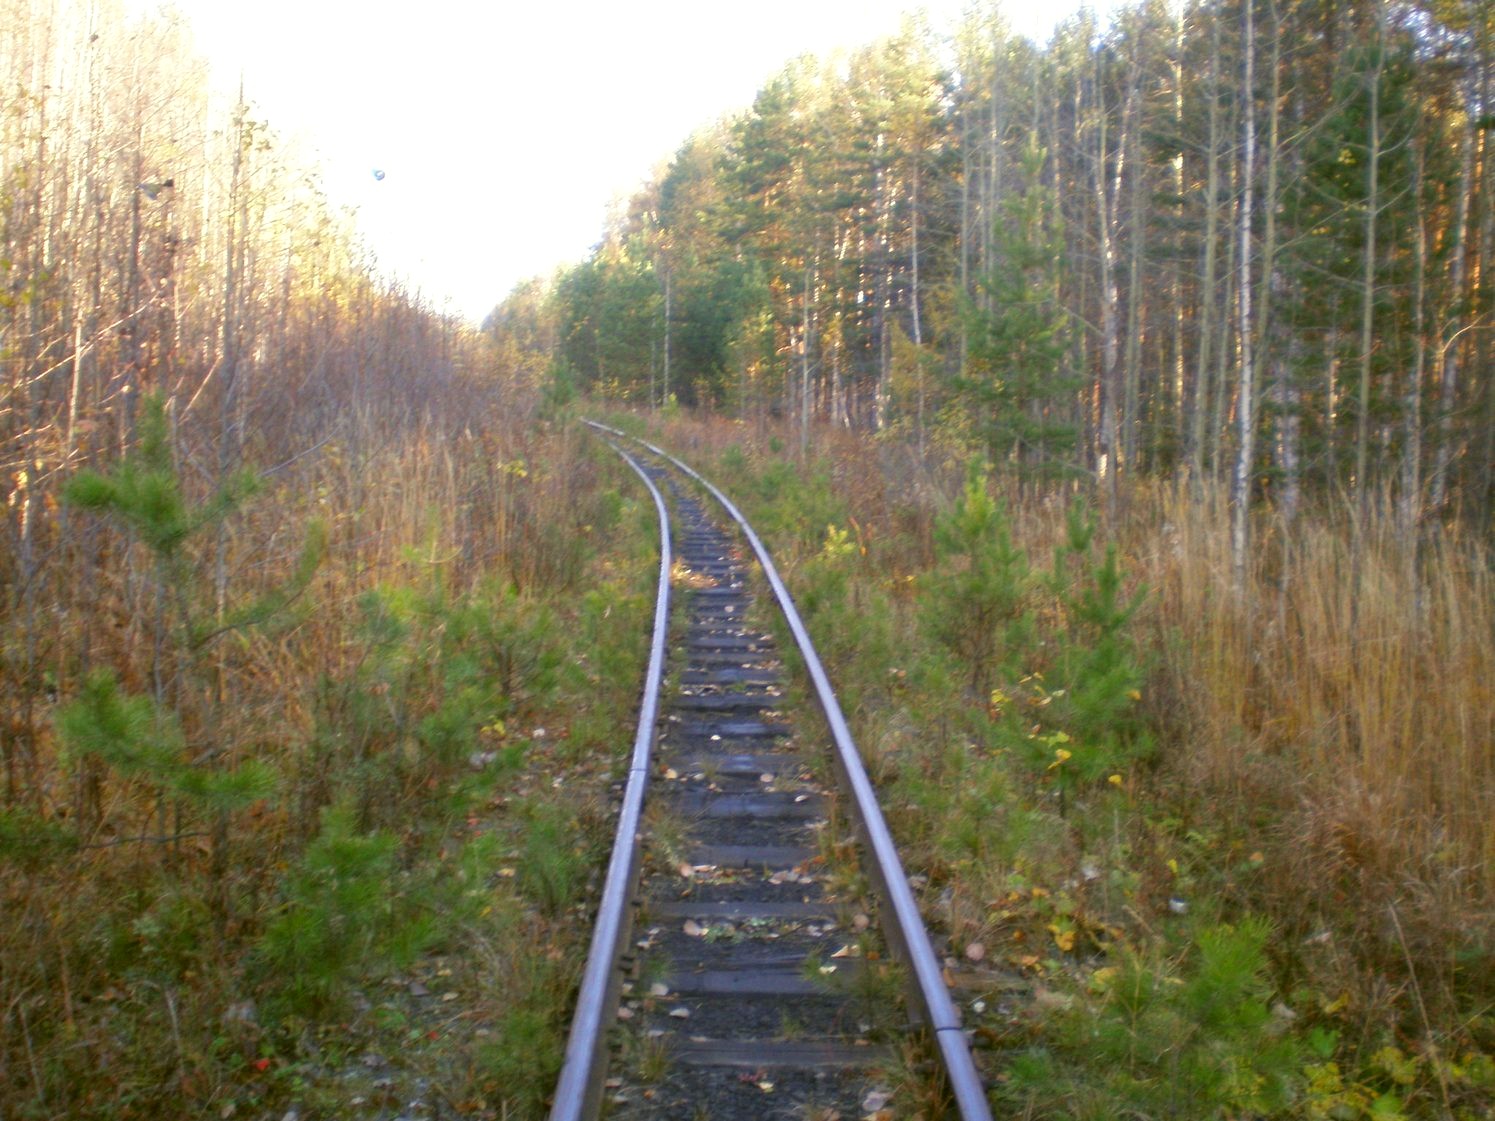 Висимо-Уткинская узкоколейная железная дорога  — фотографии, сделанные в 2007 году (часть 22)